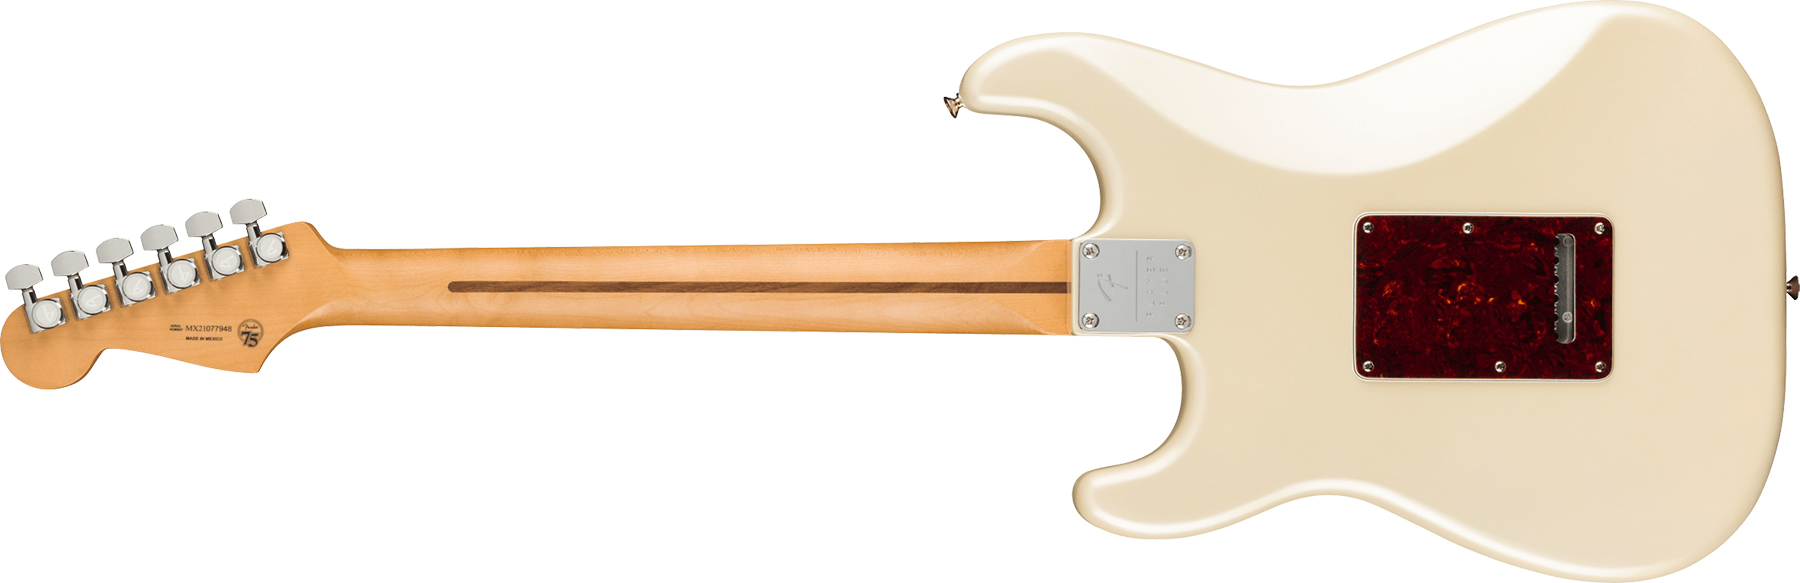 Fender Strat Player Plus Lh Mex Gaucher 3s Trem Mn - Olympic Pearl - Linkshandige elektrische gitaar - Variation 1